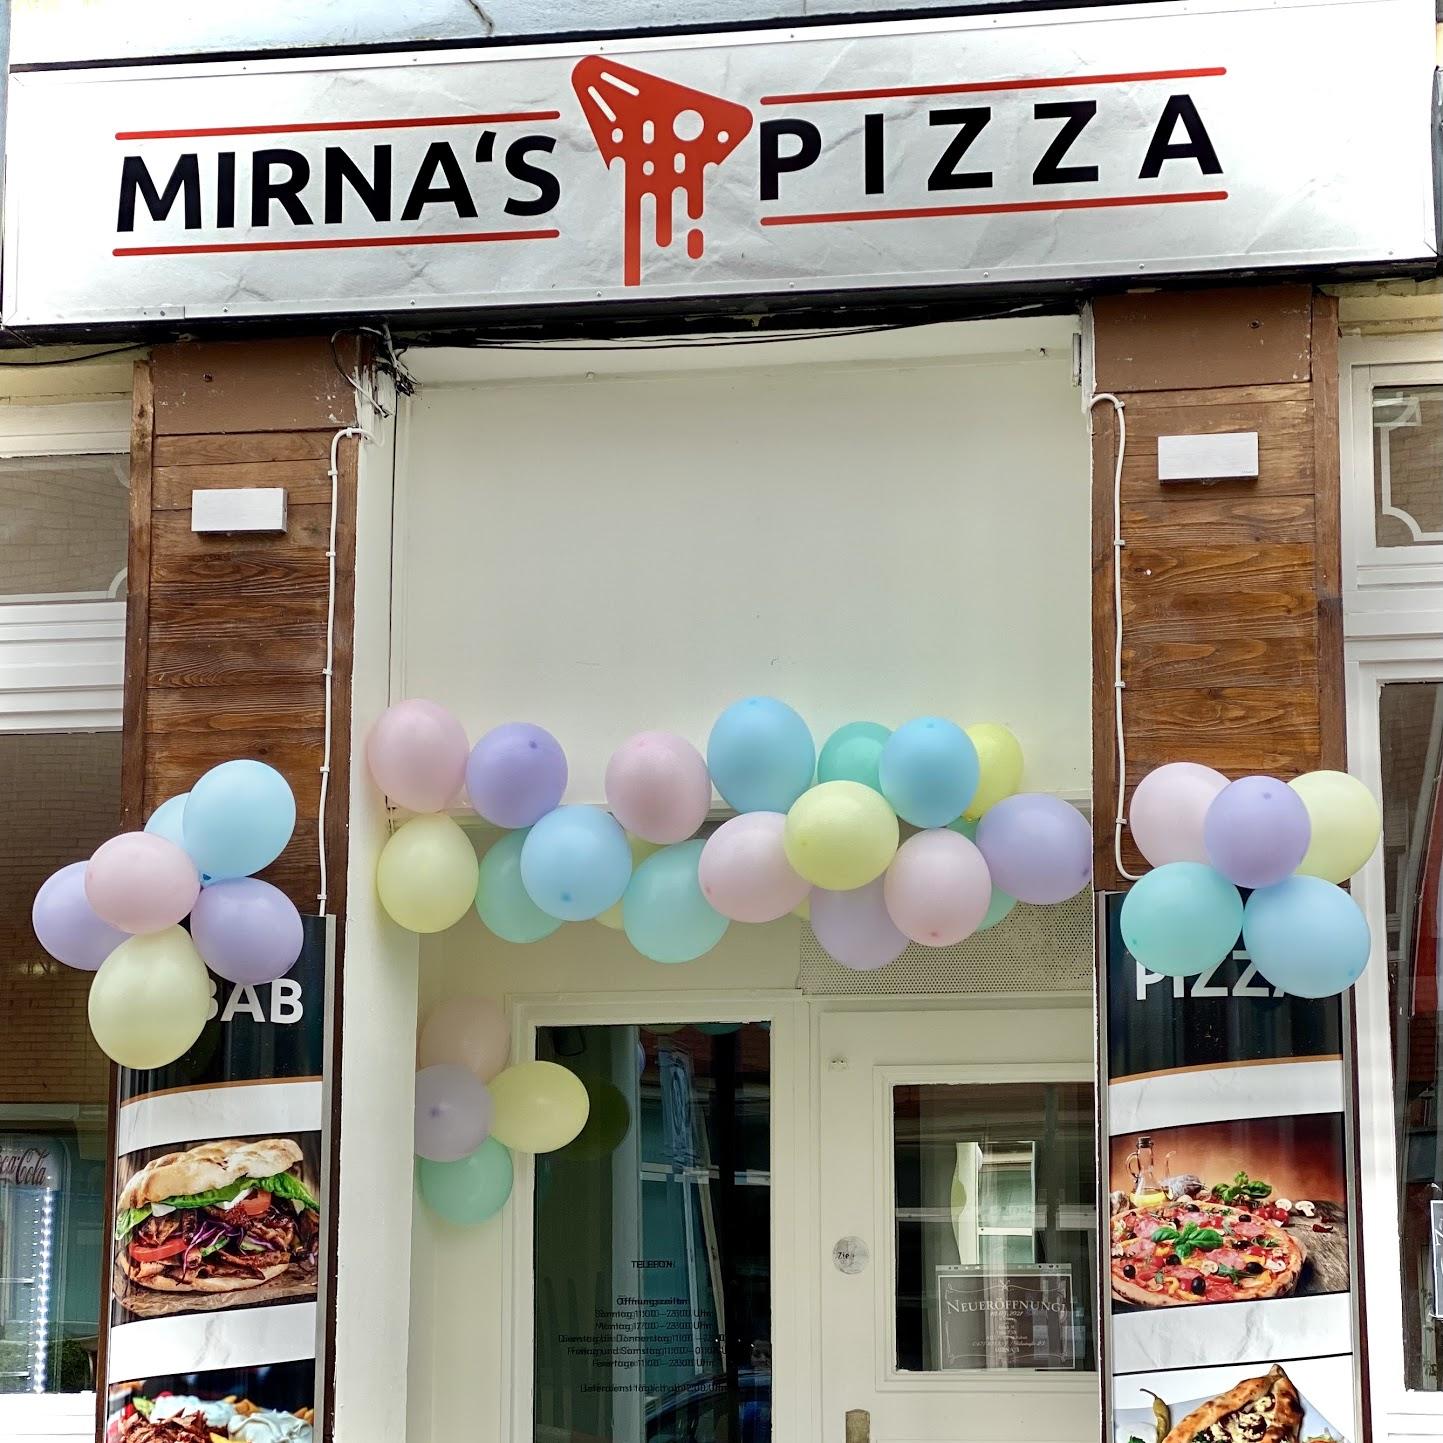 Restaurant "Mirna